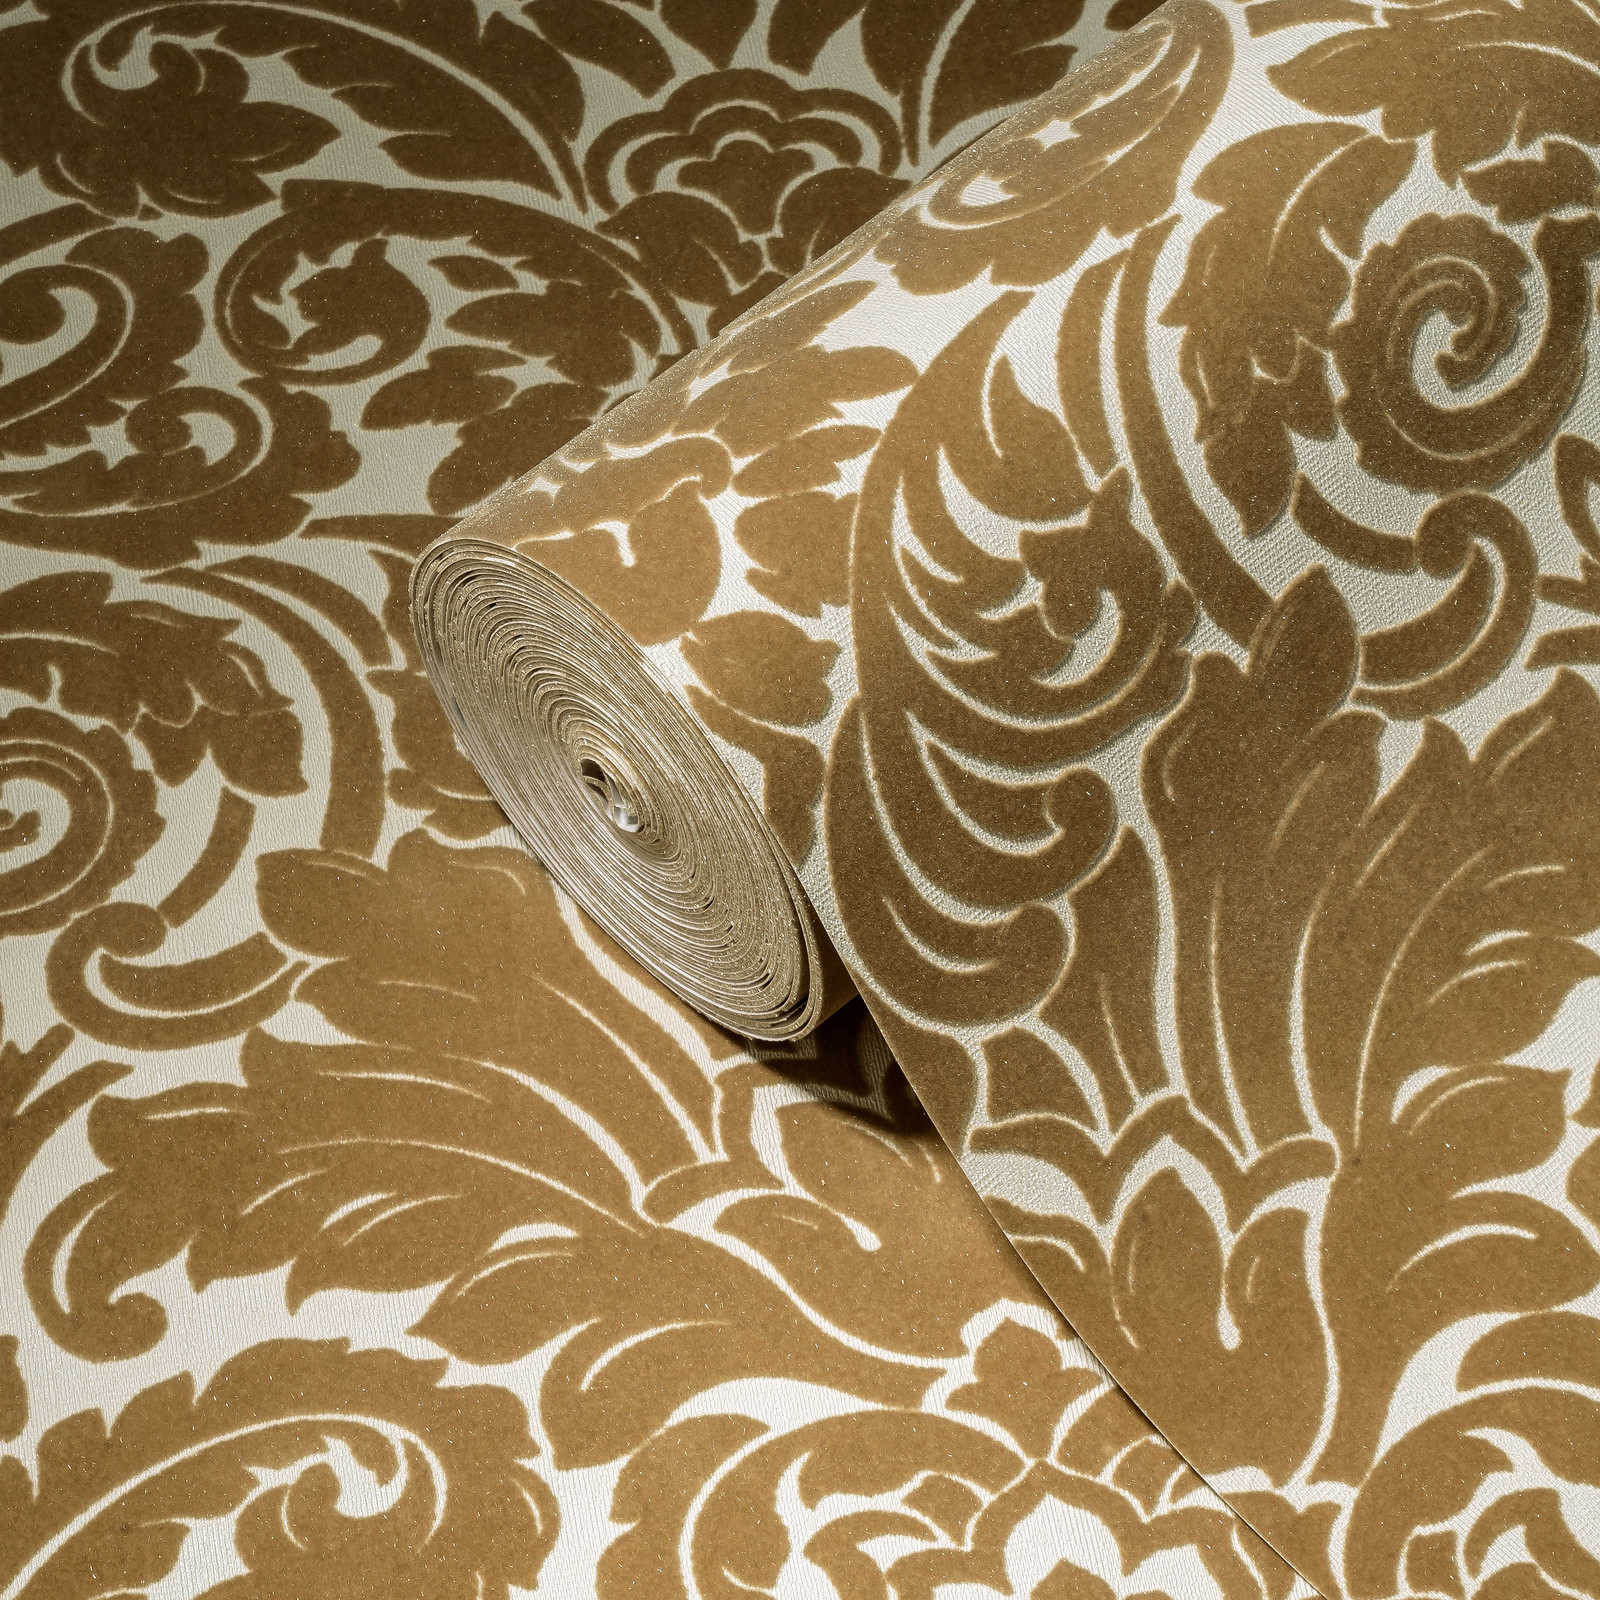             Barok behang met zijdeachtig flock patroon in goud
        